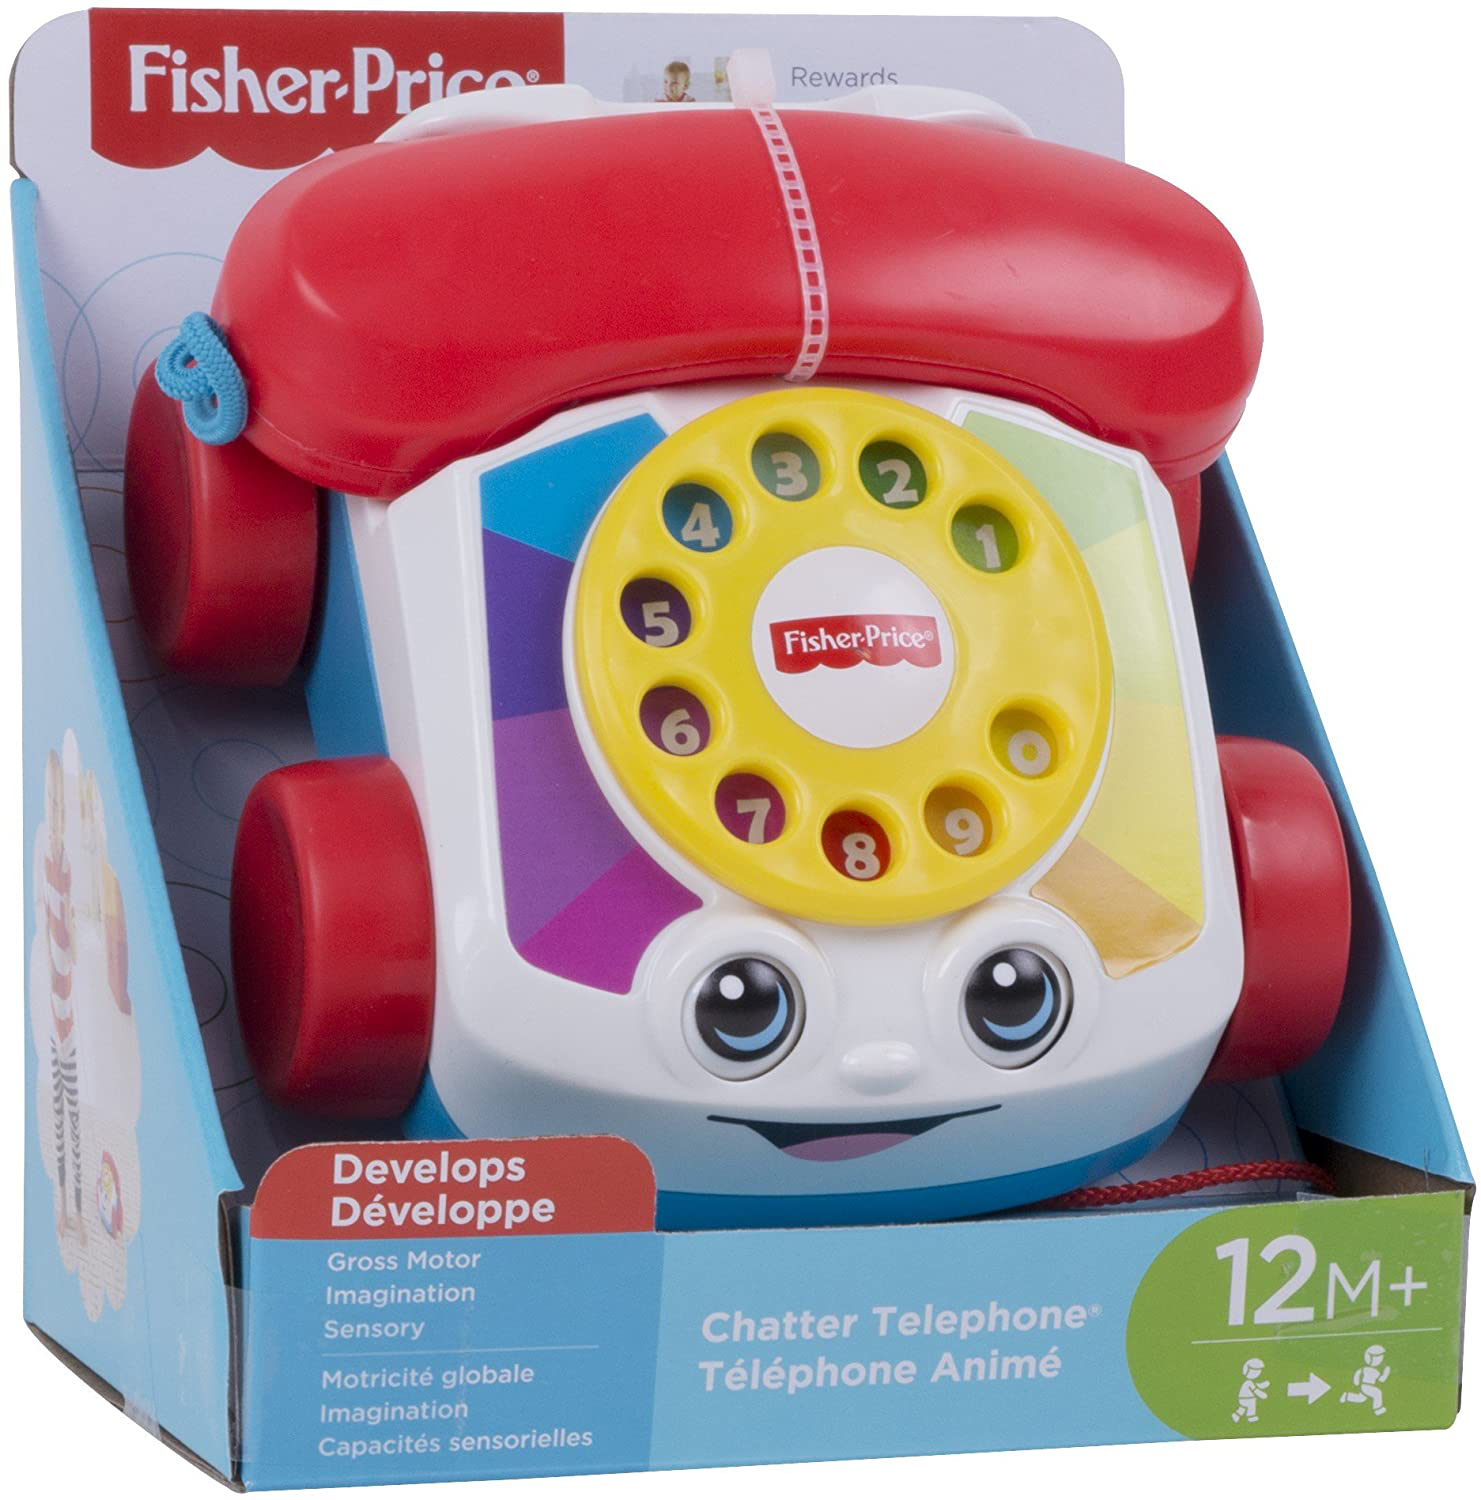 Телефончик Fisher Price. Игрушка "телефон". Умный телефон игрушка Fisher Price. Детский стационарный телефон игрушка.